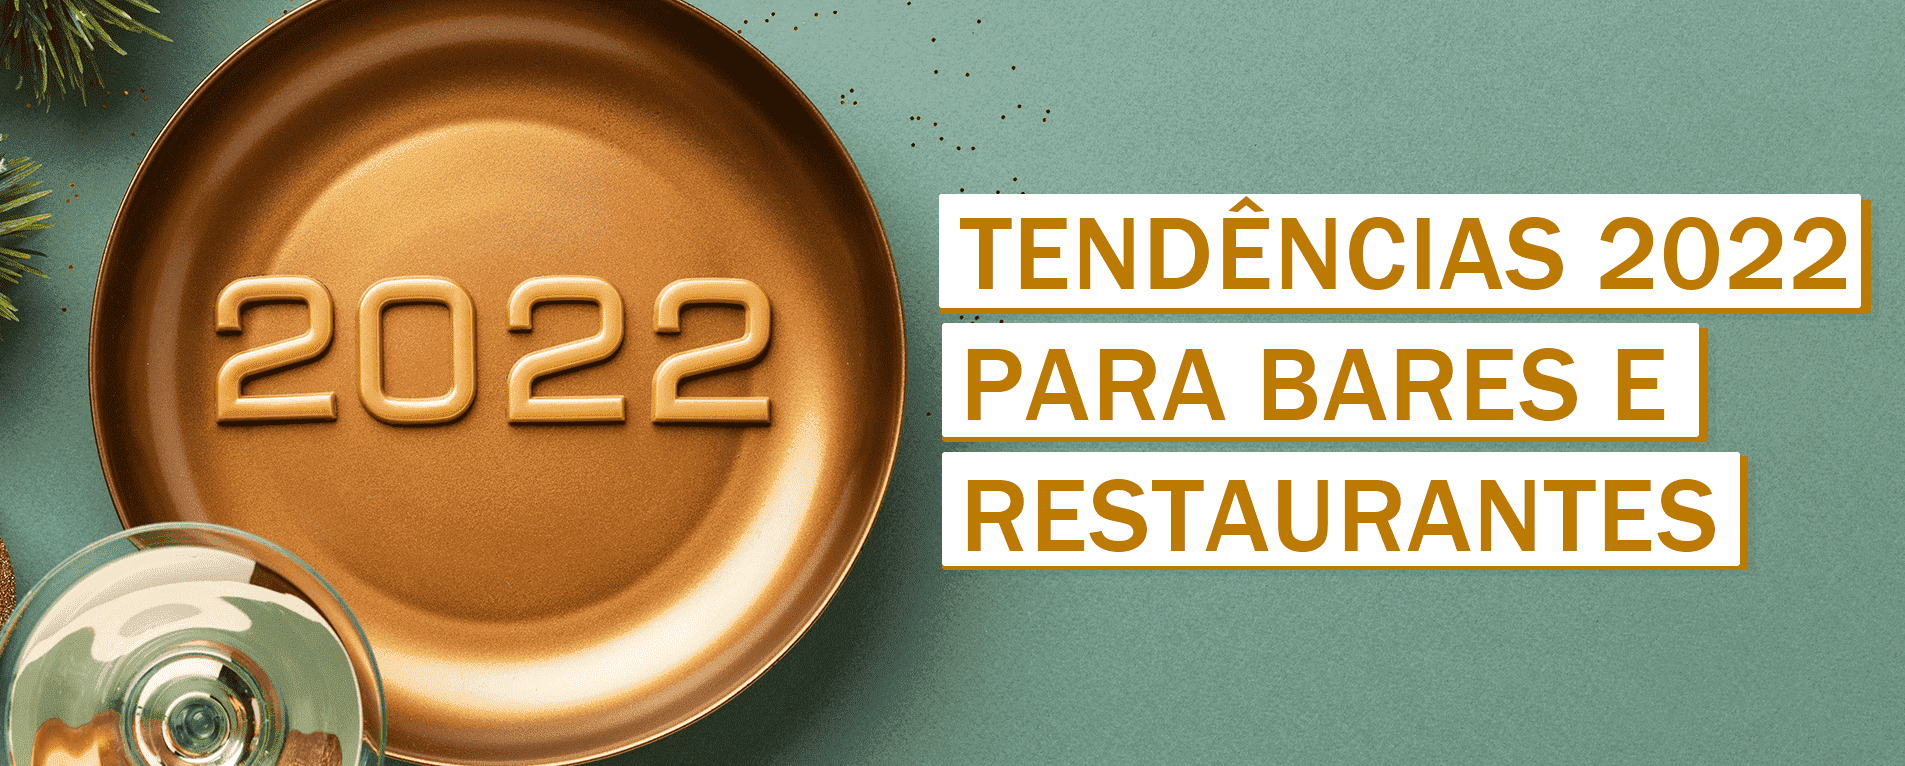 Descubra 11 Tendências 2022 para Bares e Restaurantes